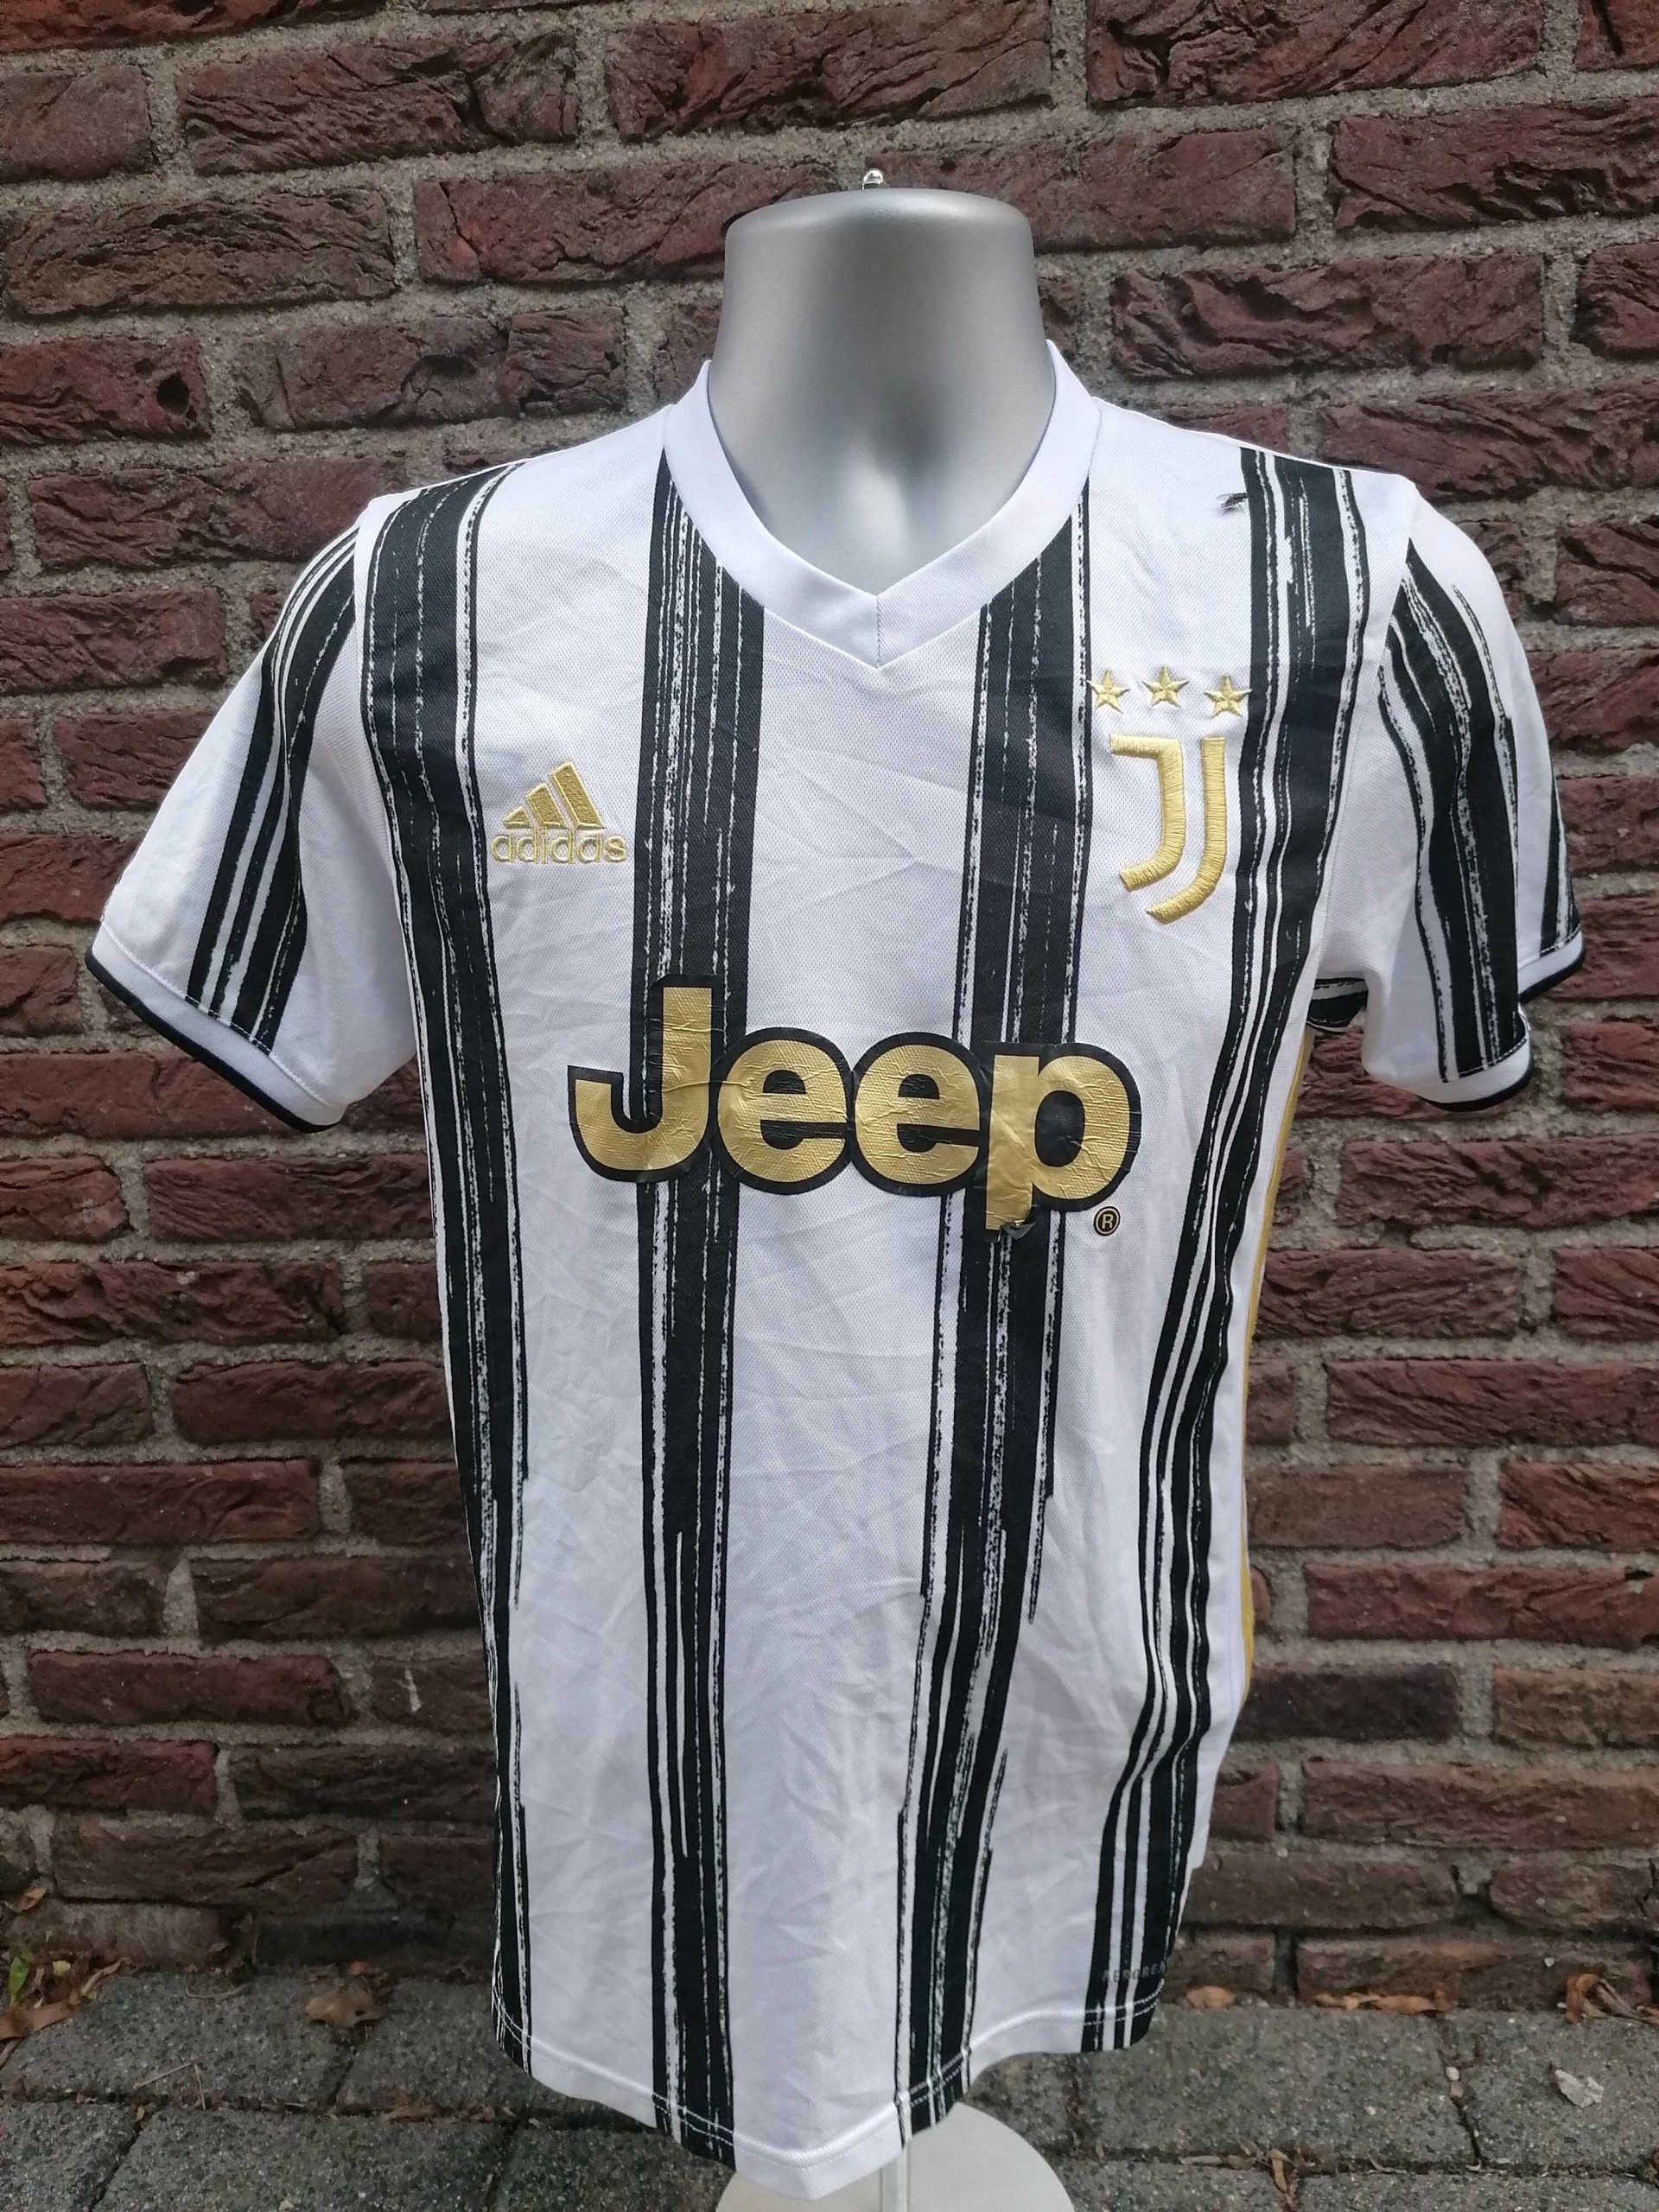 Juventus 2020 2021 home shirt adidas football top size S